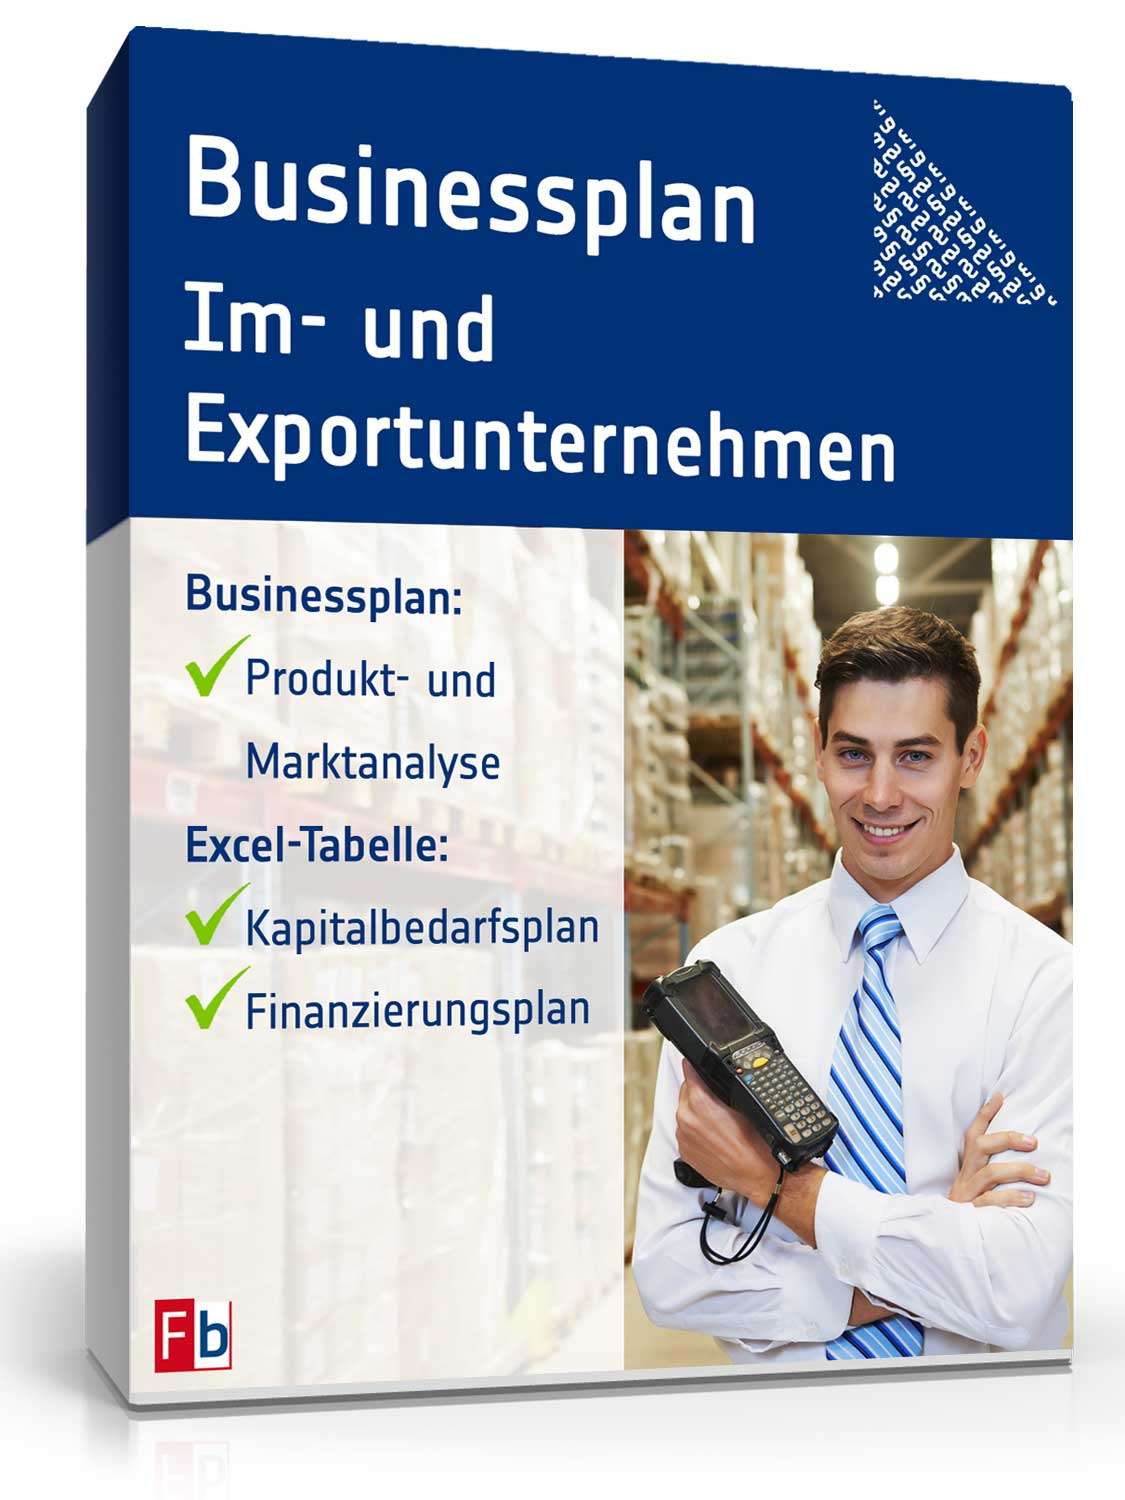 Hauptbild des Produkts: Businessplan Im- und Exportunternehmen